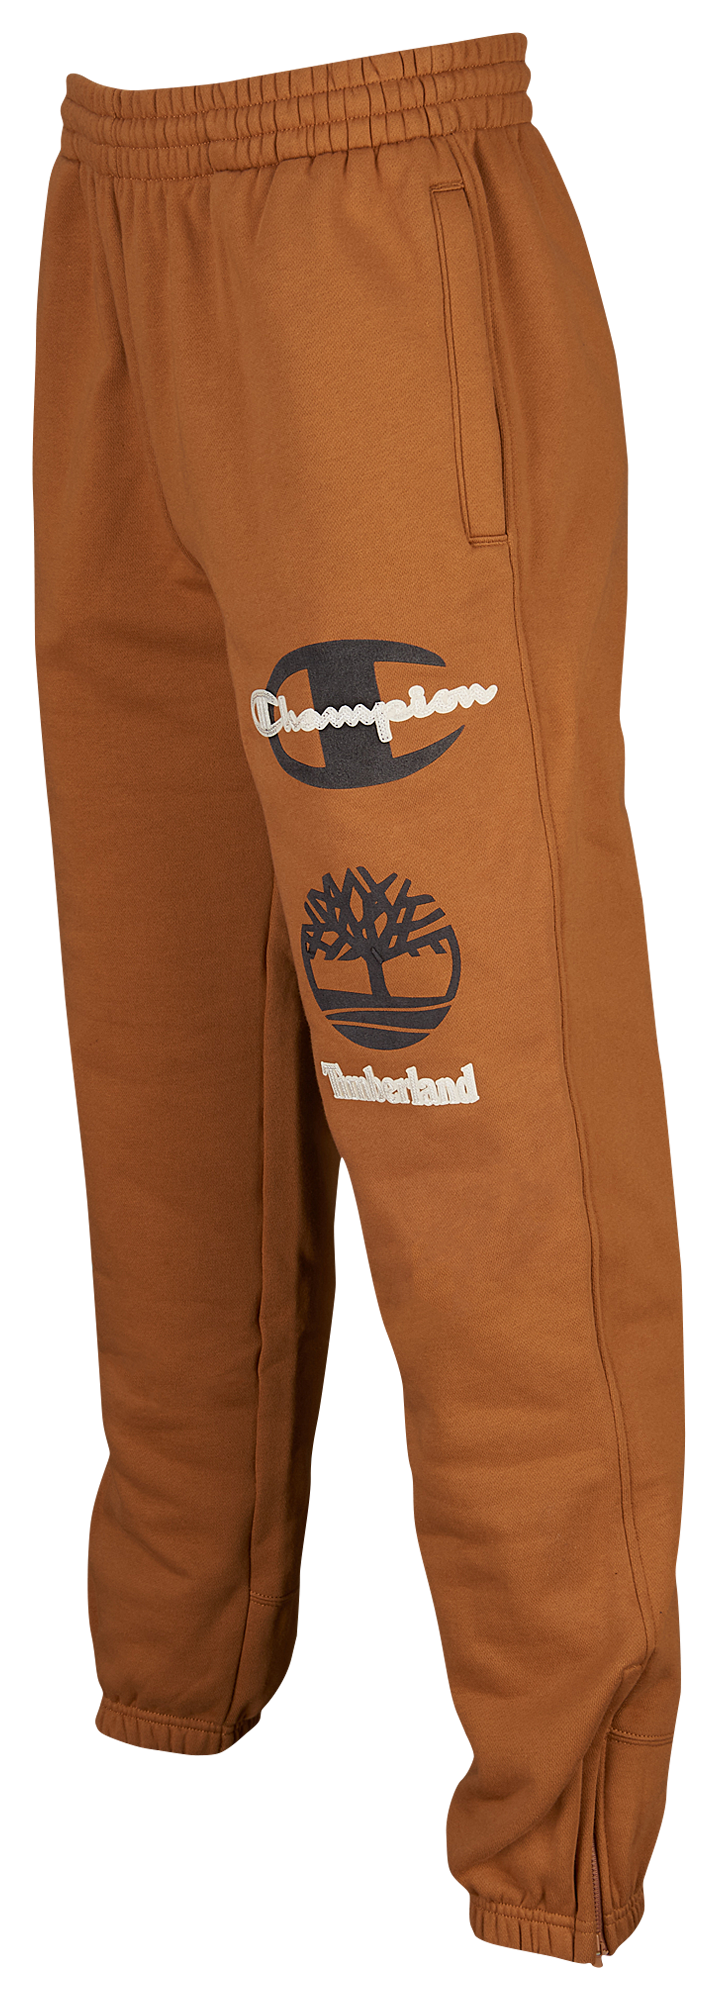 timberland champion pants